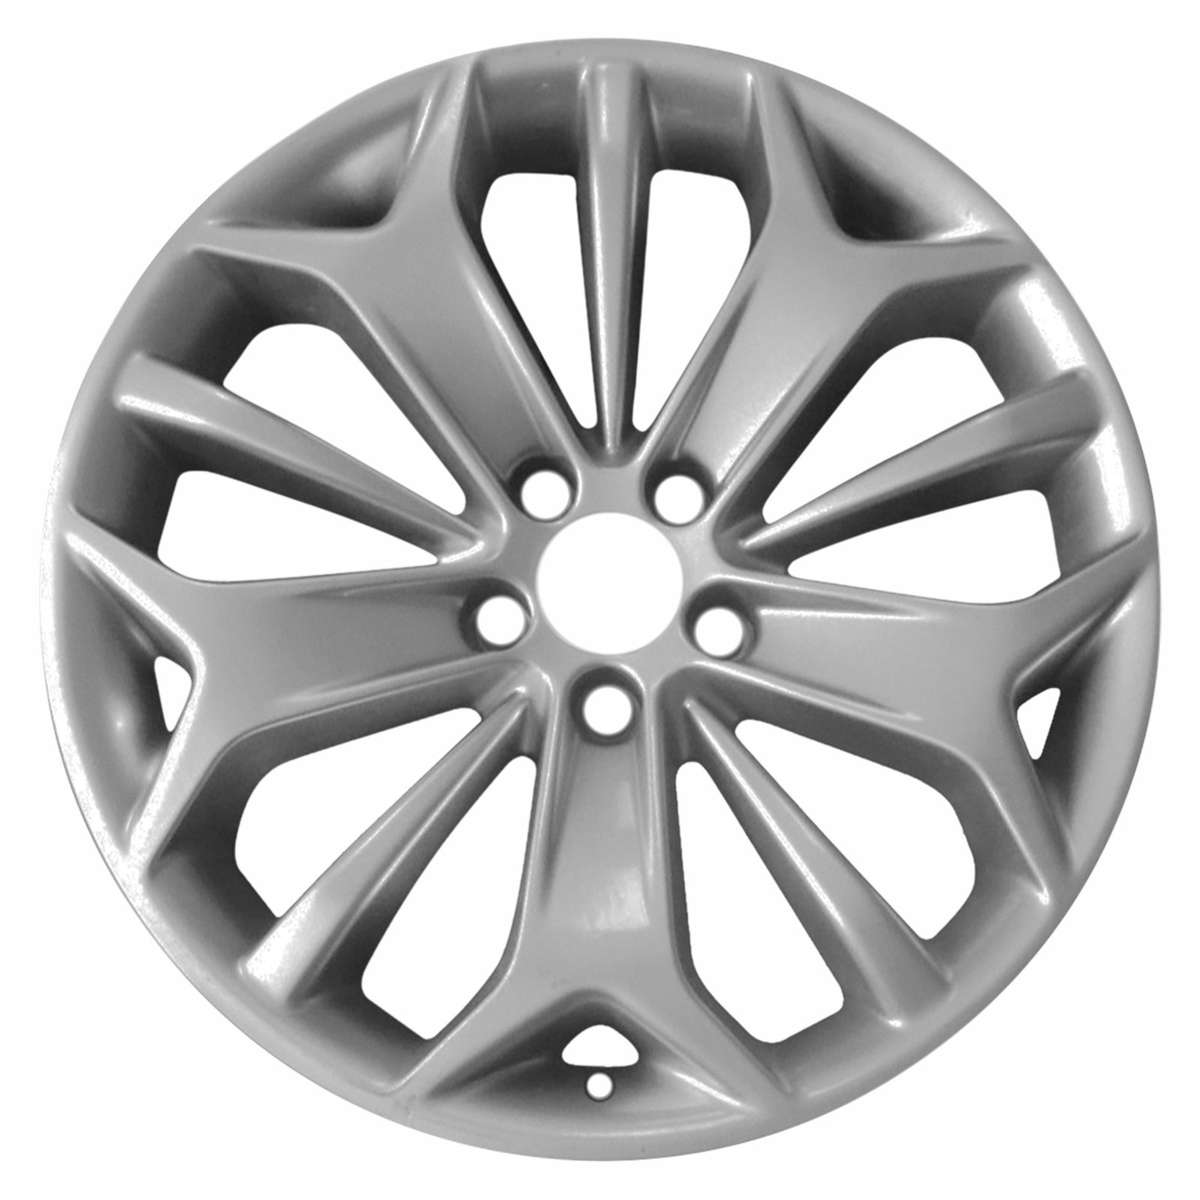 2014 Ford Taurus 19" OEM Wheel Rim with Center Cap Lip W3925S